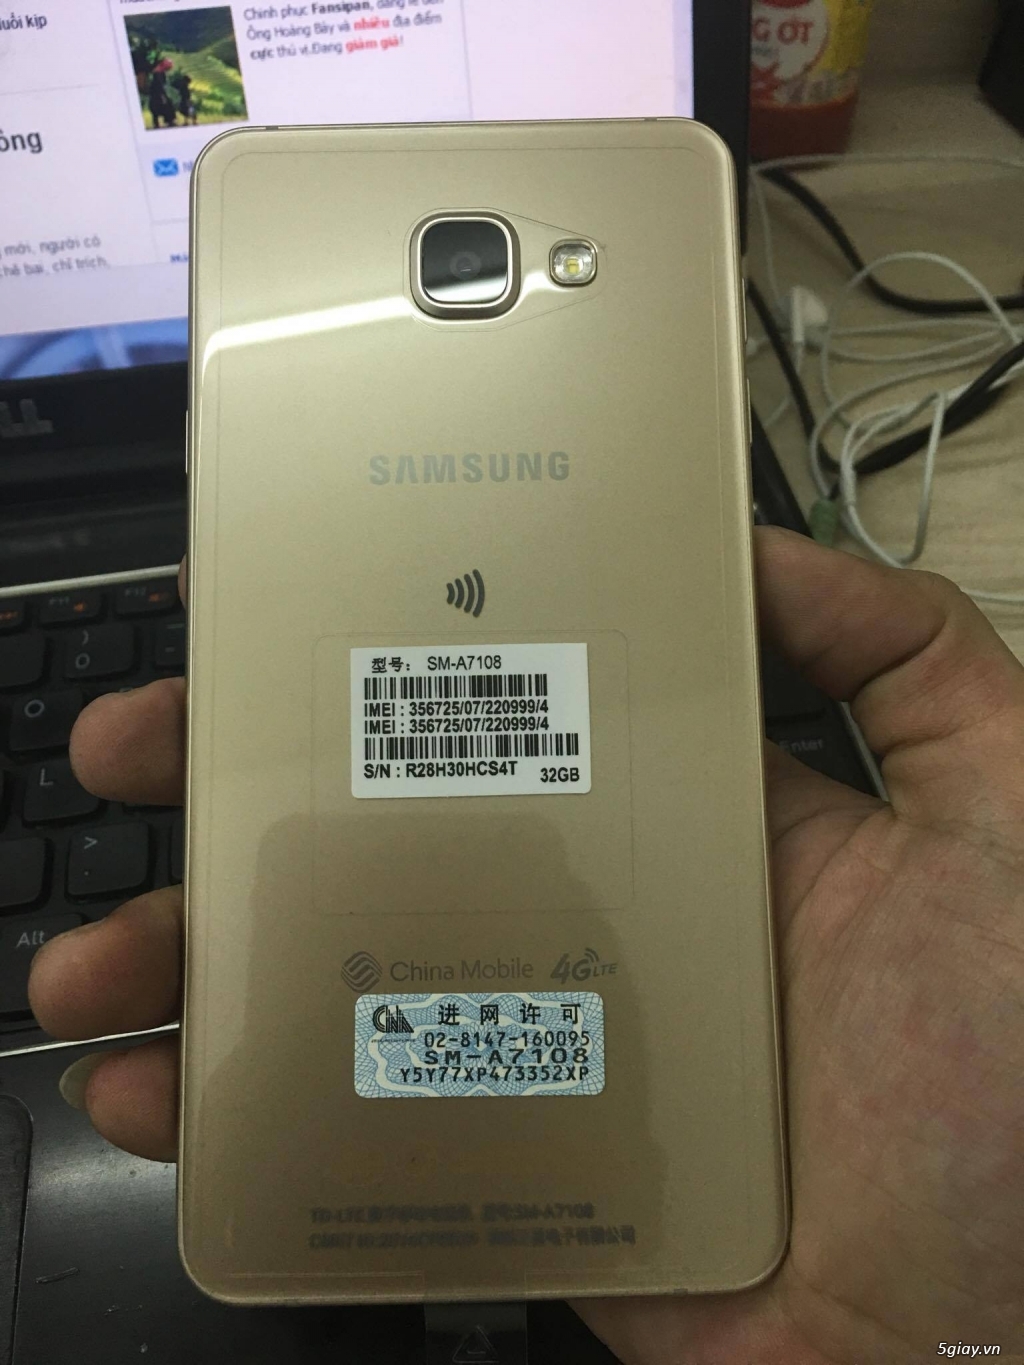 Cần bán Samsung A7 (China Mobile), Máy đẹp giá rẻ - 4